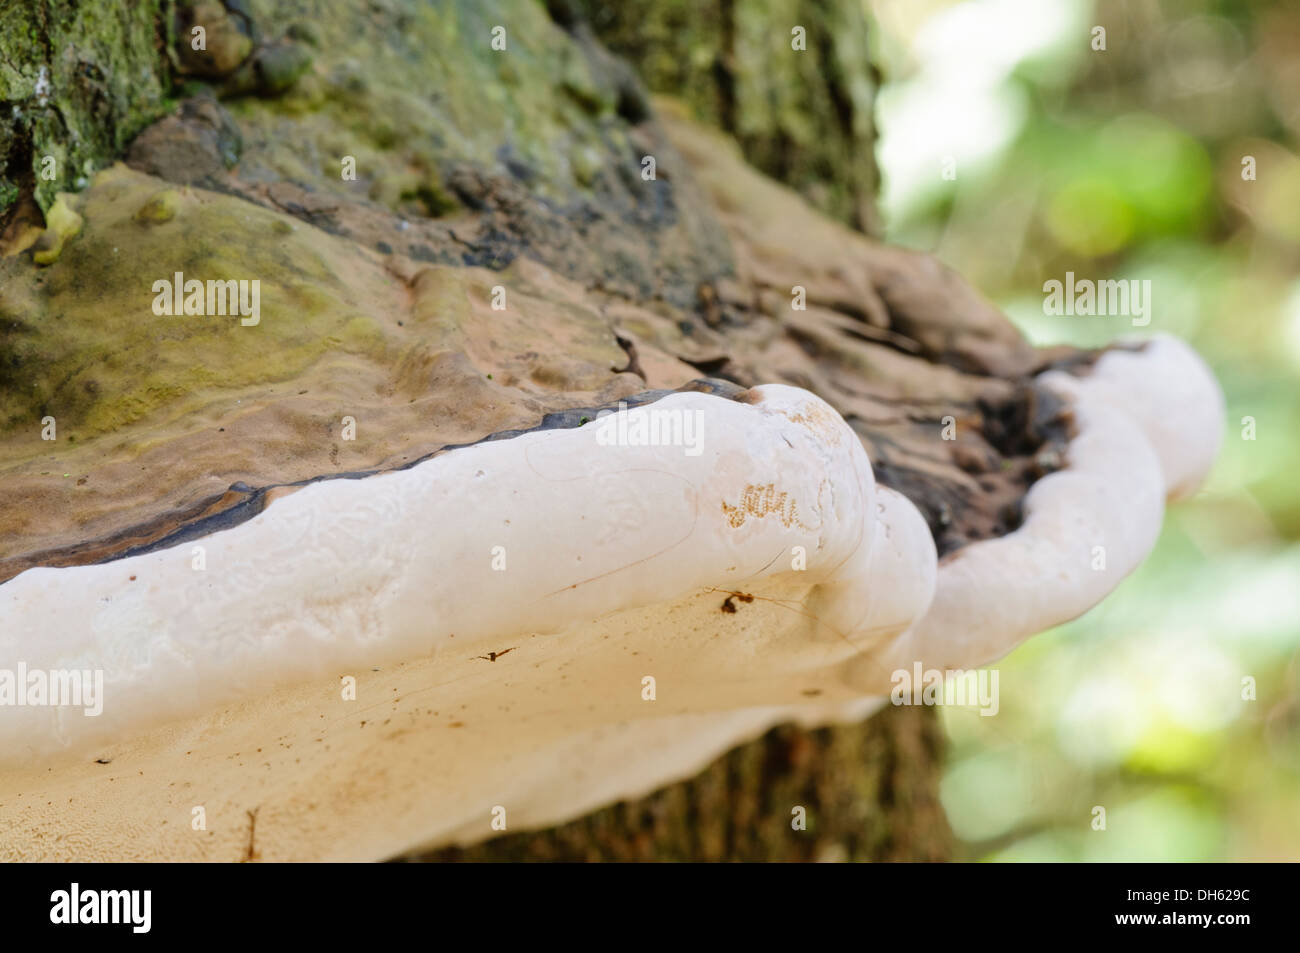 Razor strop fungus (piptoporus betulinus) growing on a tree Stock Photo